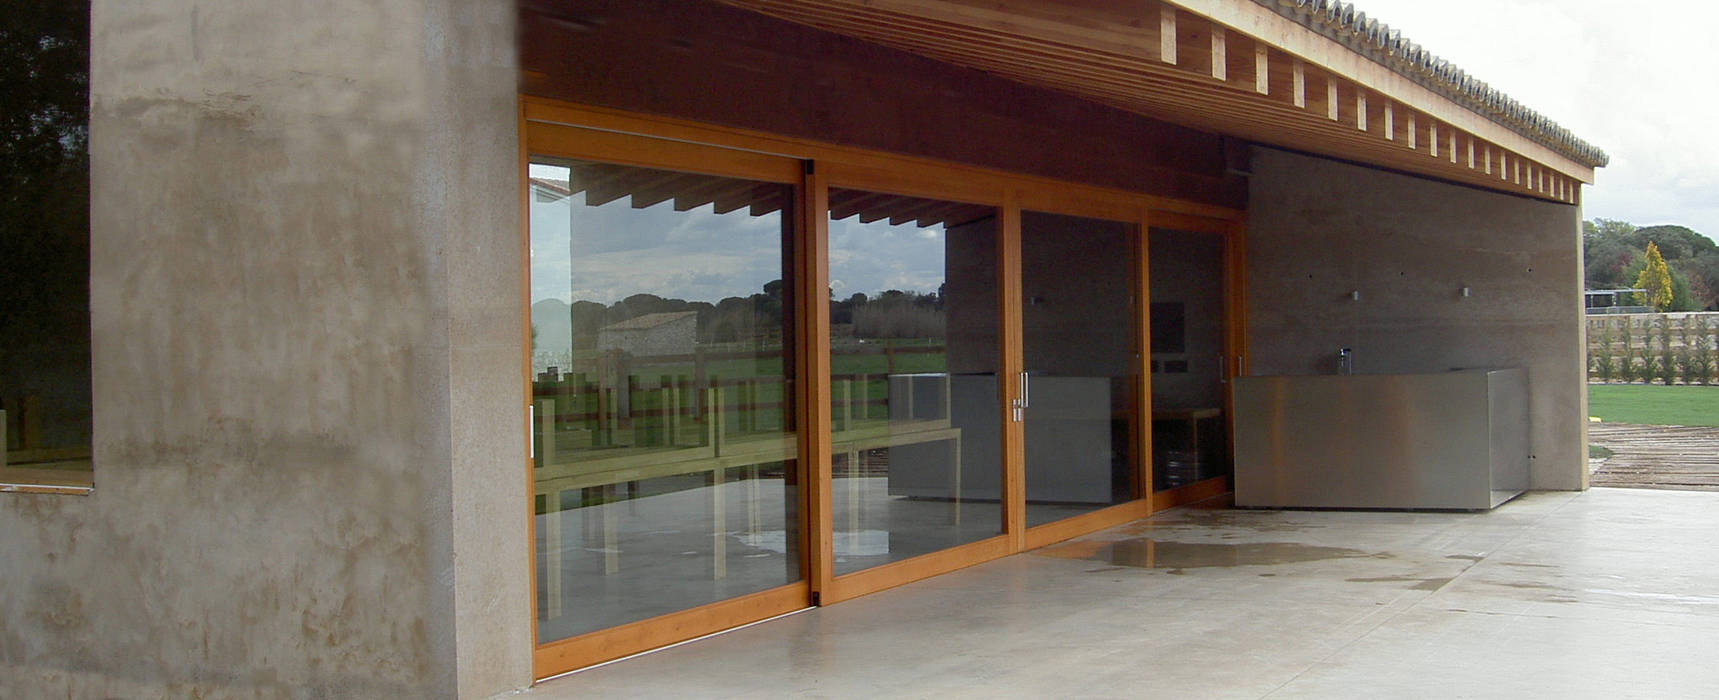 Finca de recreo Montebayón Ignacio Quemada Arquitectos Puertas y ventanas de estilo moderno Madera Acabado en madera